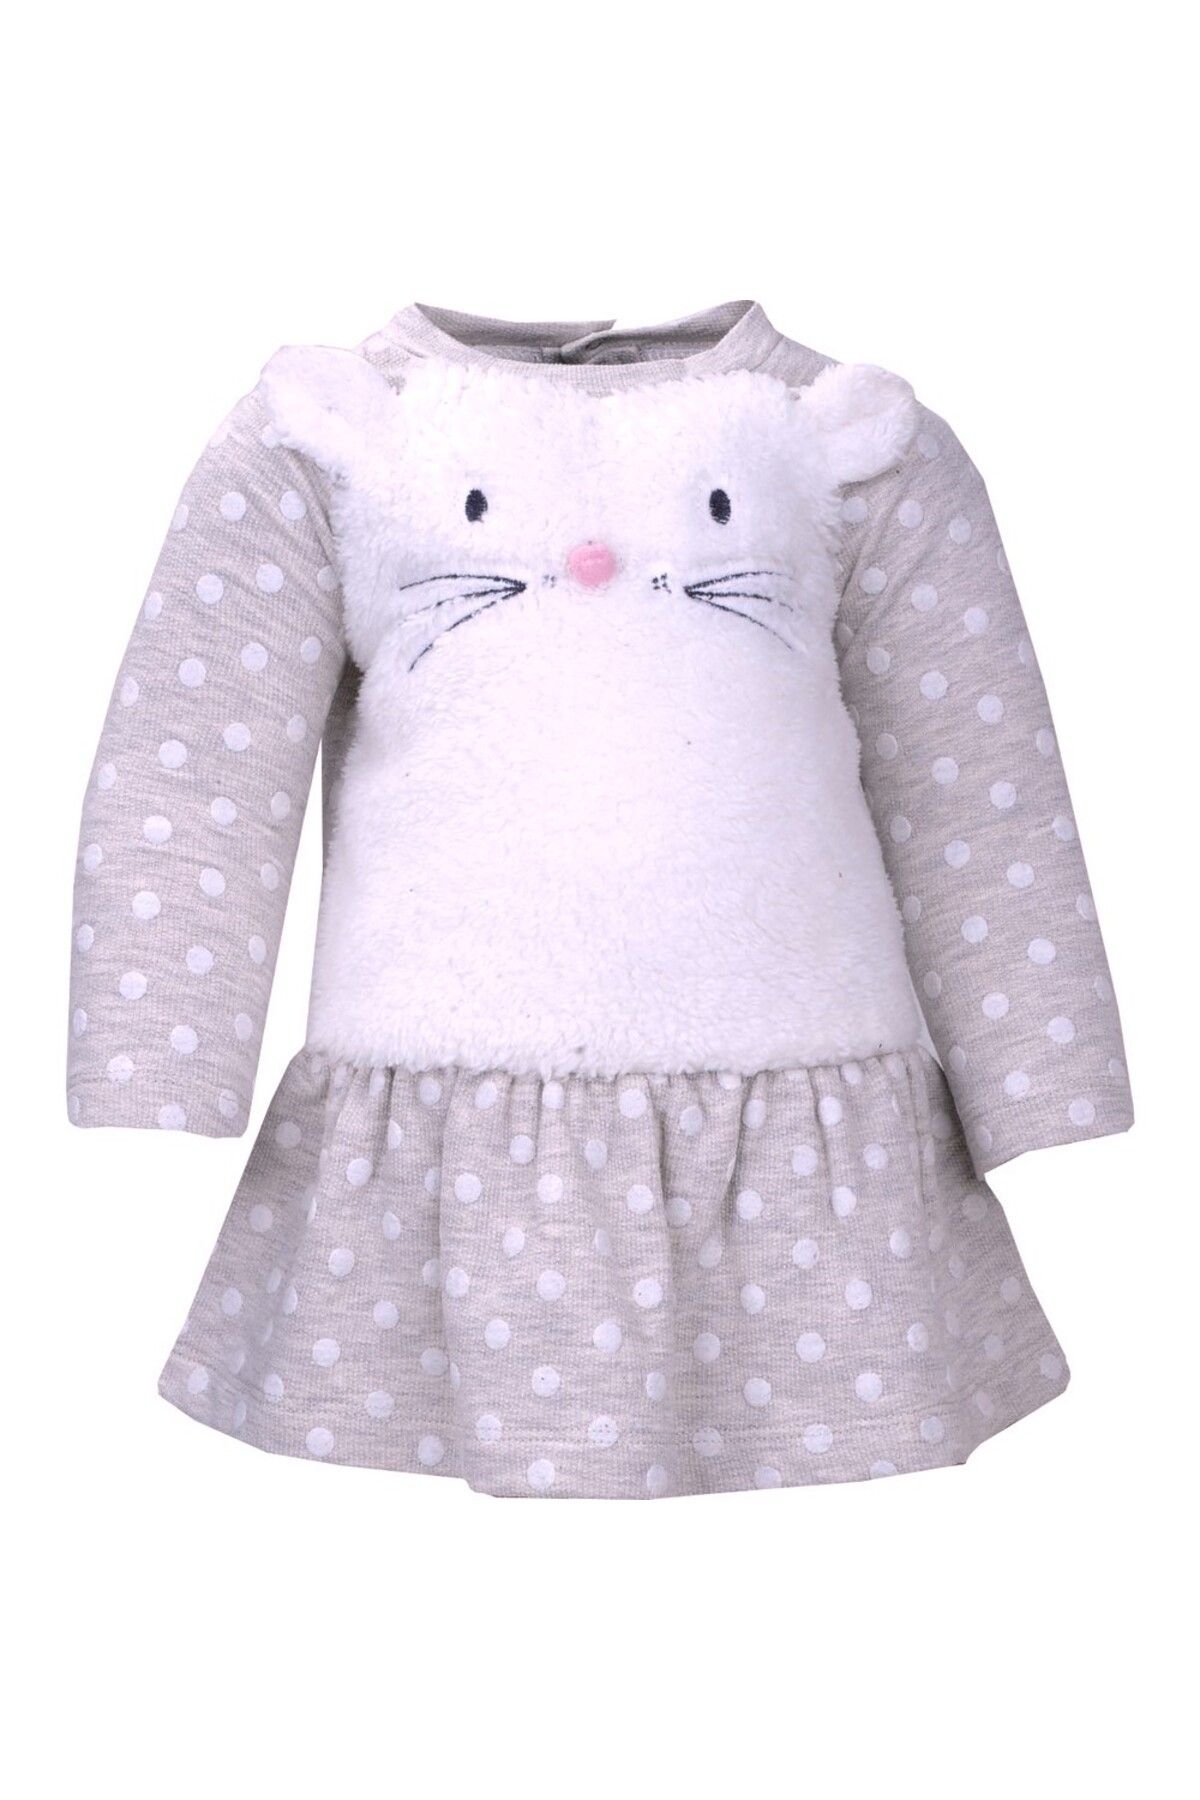 Zeyland Kız Bebek Küçük Kız Çocuk % 100 Pmauk Cotton Ekru Renk Puantiyeli Elbise